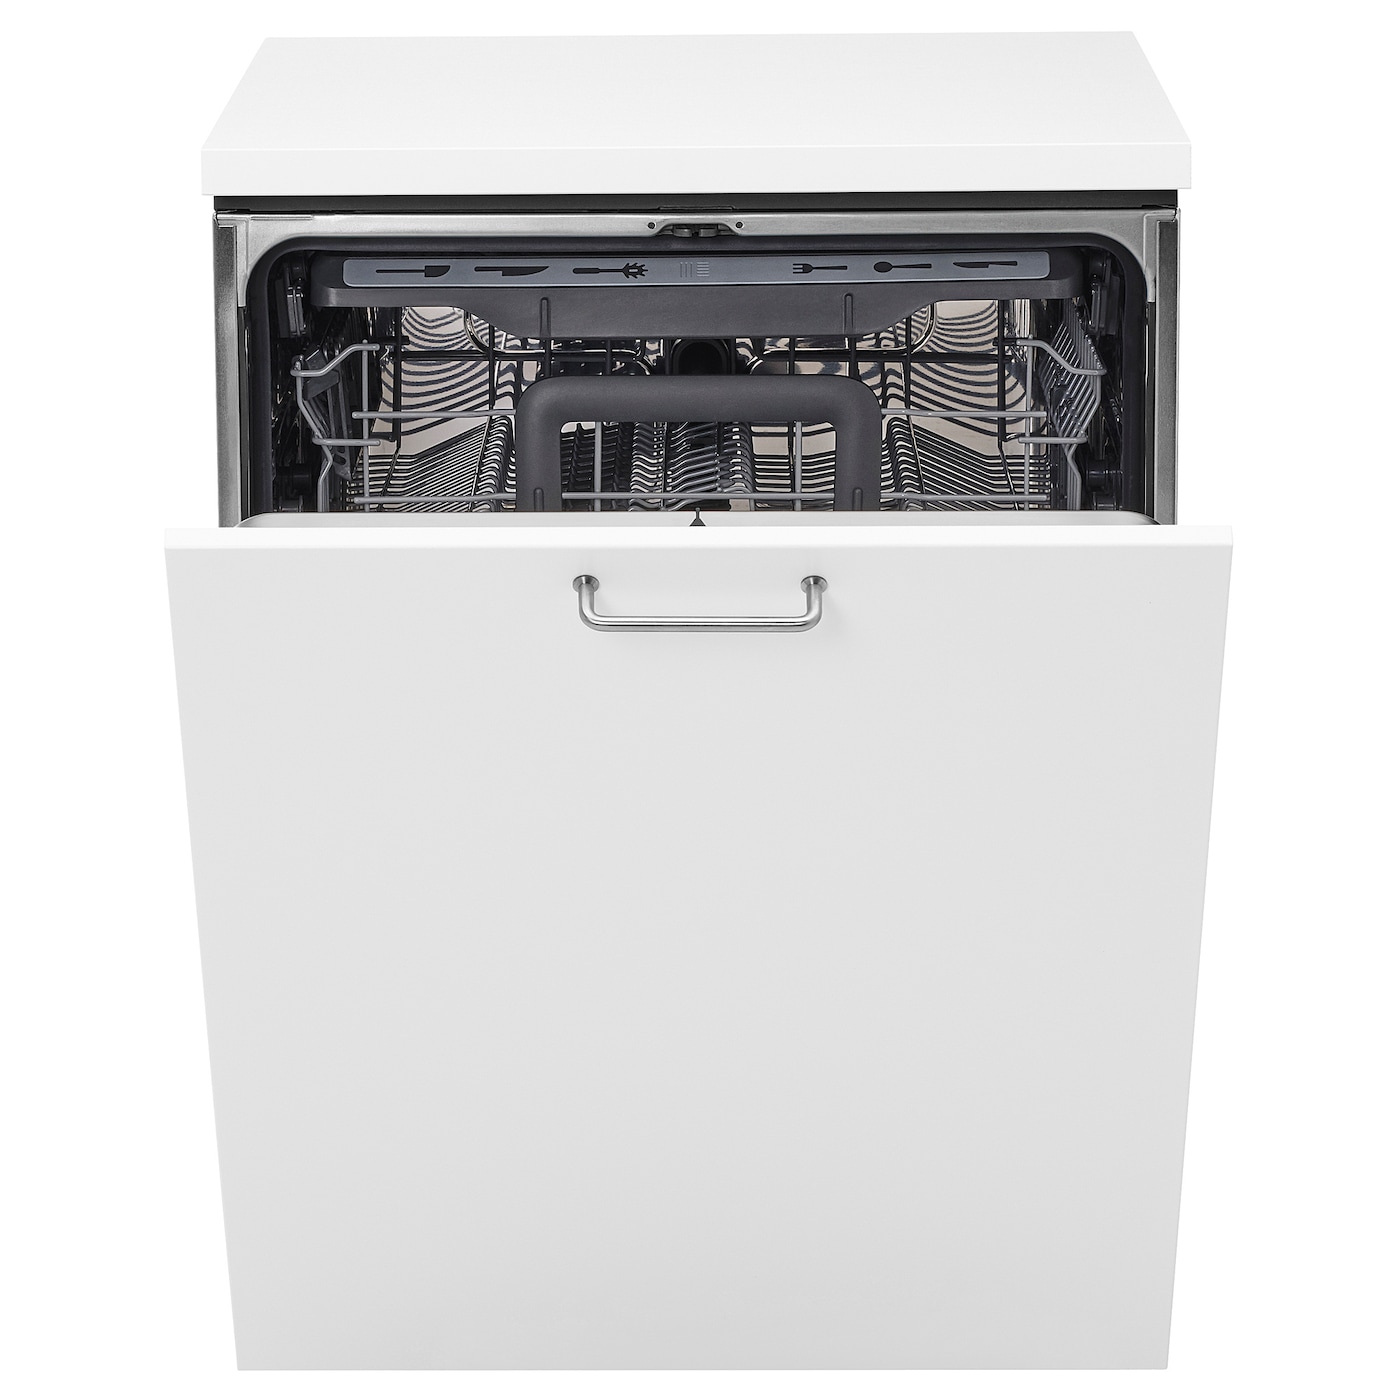 Встраиваемая посудомоечная машина - HYGIENISK IKEA/ ХИГИЕНИСК ИКЕА,  82х60 см, белый